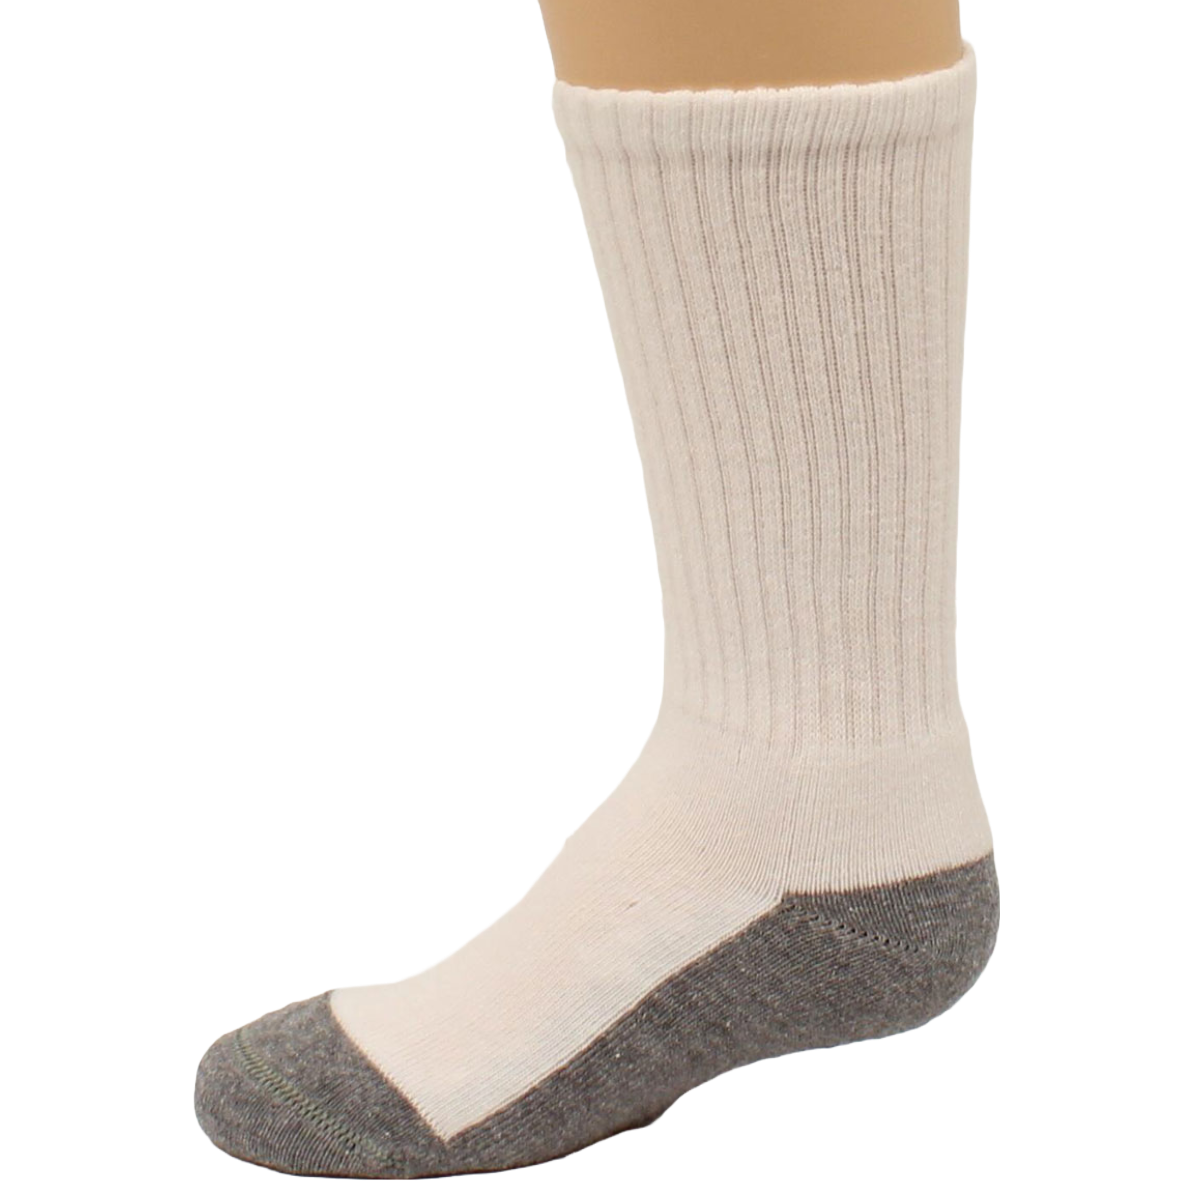 Boot Doctor Children's Grey & White Tall Crew Socks 0499505